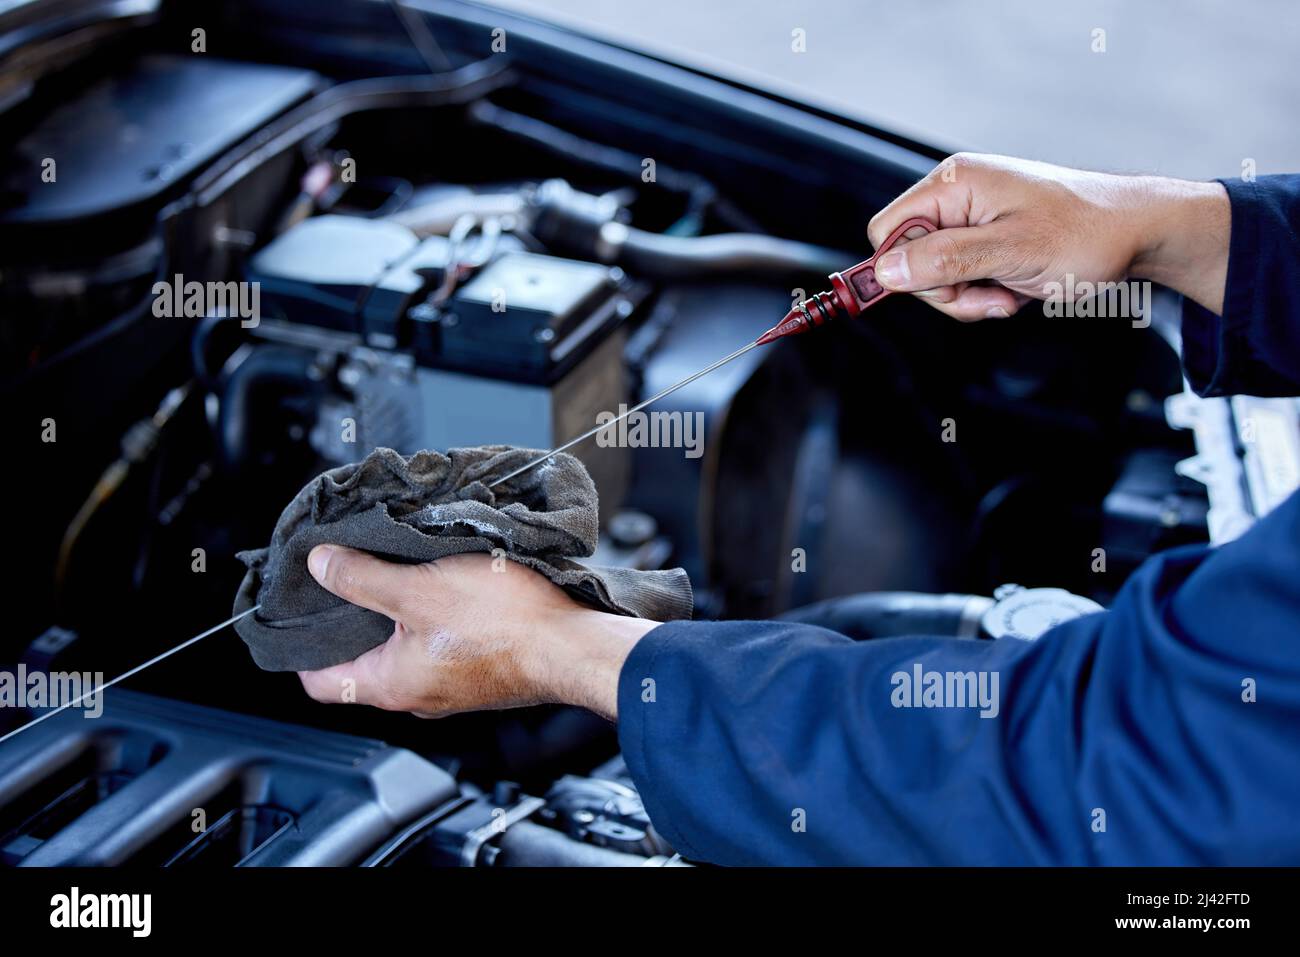 Controllo dell'olio. Colpo ad angolo alto di un meccanico maschio irriconoscibile che lavora sul motore di una vettura durante un intervento di manutenzione. Foto Stock